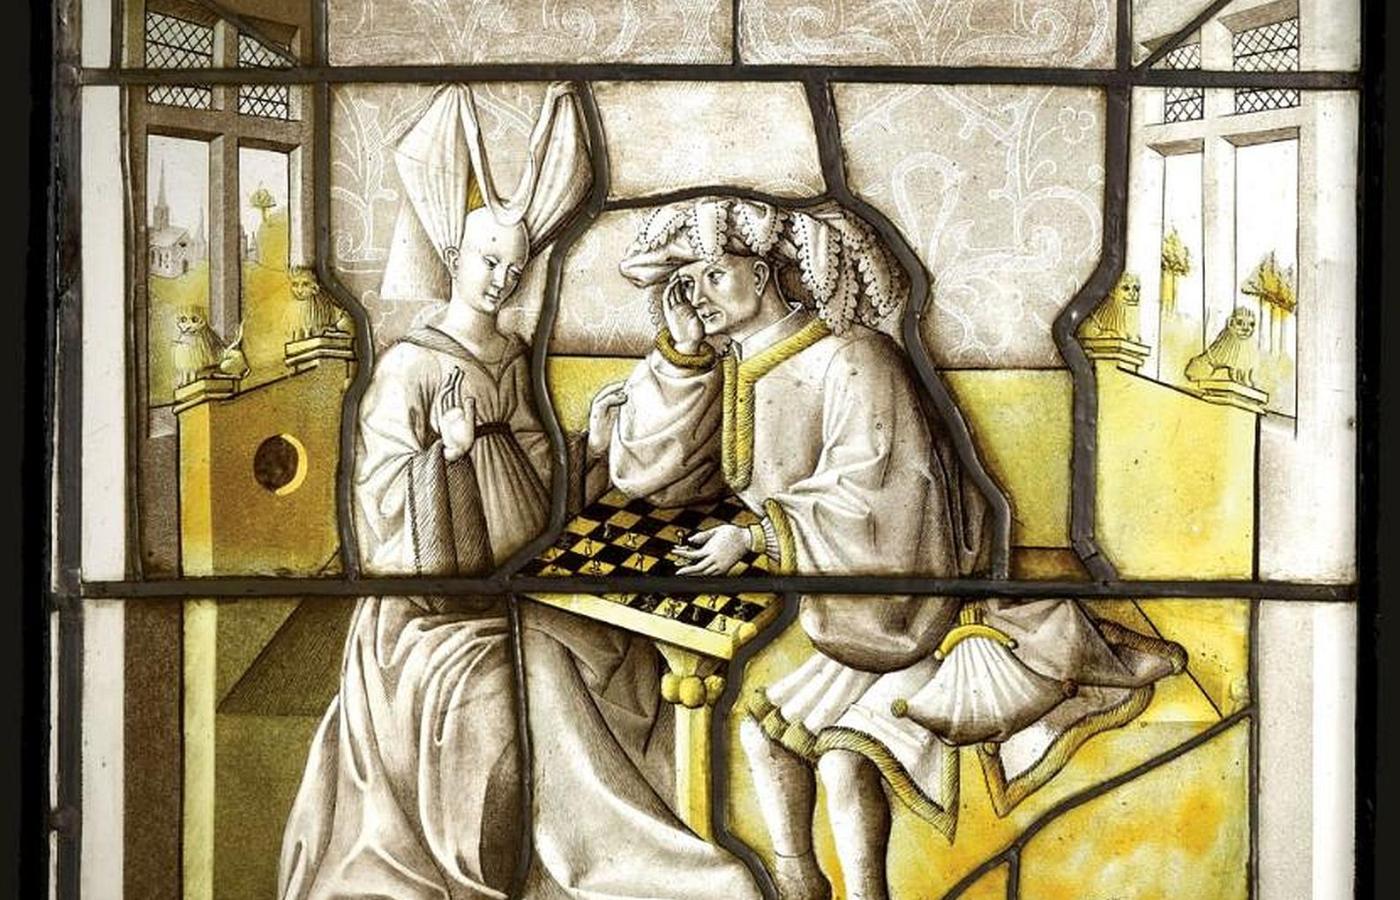 Czepek rogaty był modny w Burgundii w XV w. Kościołowi kojarzył się z szatanem, ale w końcu stał się nakryciem głowy zakonnic, czyli kornetem.